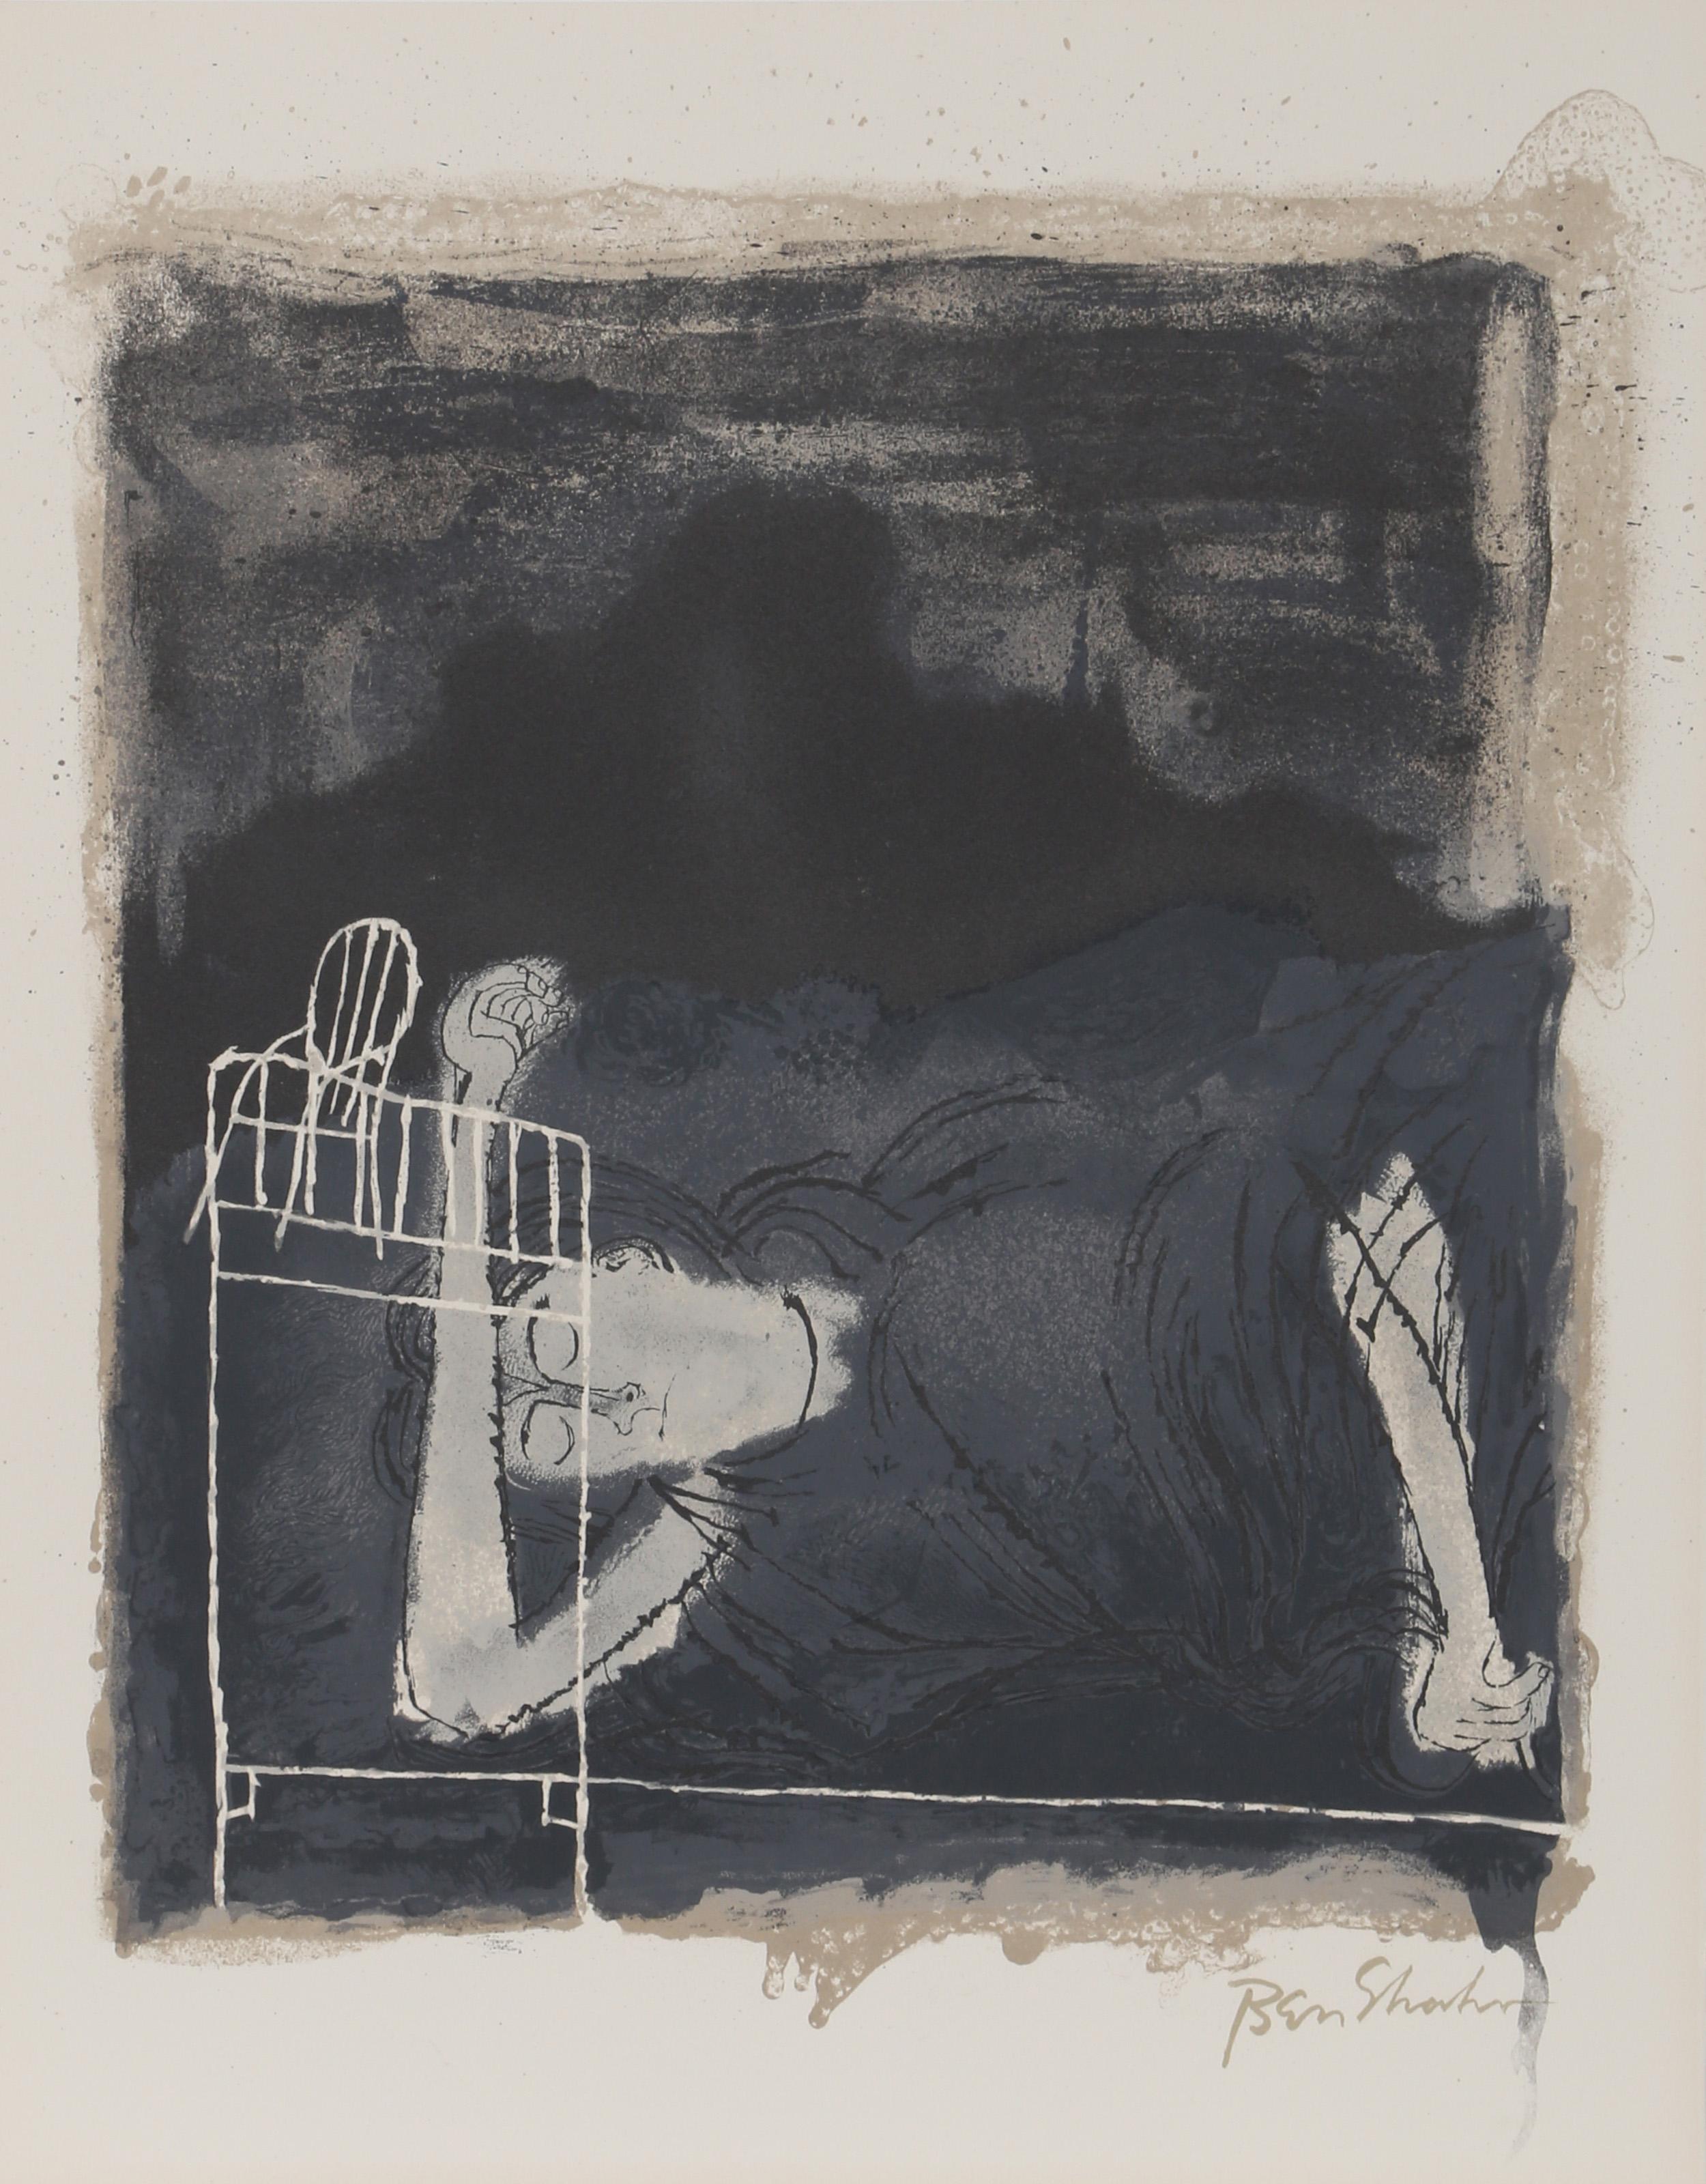 Künstler: Ben Shahn, Amerikaner (1898 - 1969)
Titel: Wehenschreie von Frauen aus dem Rilke-Portfolio
Jahr: 1968
Medium: Lithographie auf Arches, in der Platte signiert
Auflage: 750
Größe: 22,5 x 17,75 Zoll (57,15 x 45,09 cm)

Druckerei: Atelier